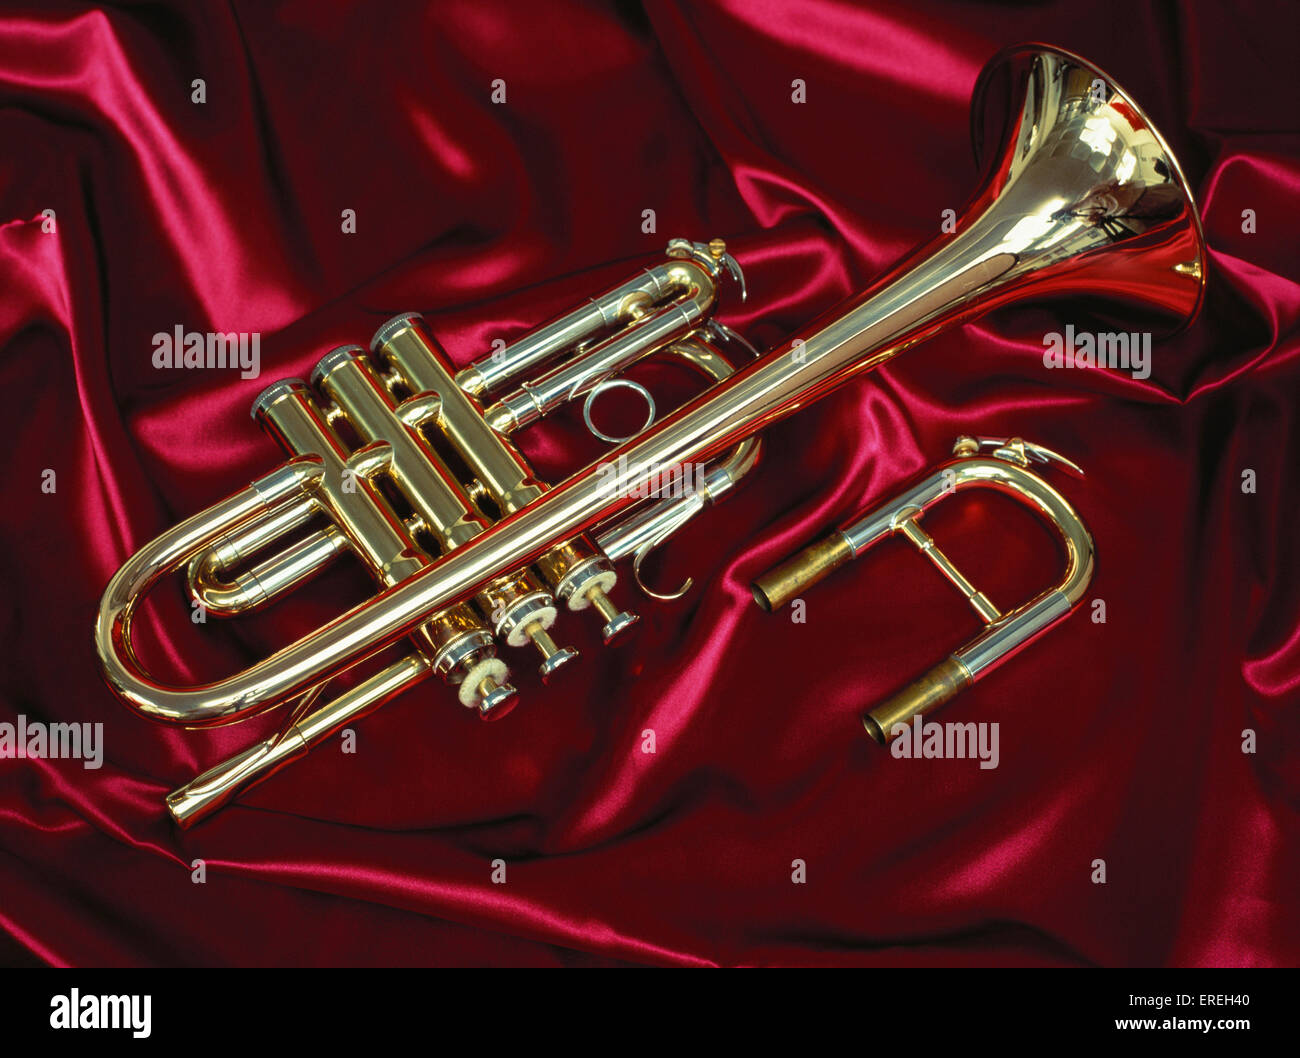 E - Trompete mit weitere Folie in D Trompete Besson gemachten konvertieren. Auf rote, glänzende Stoff.  Satin.  Roten Hintergrund Stockfoto